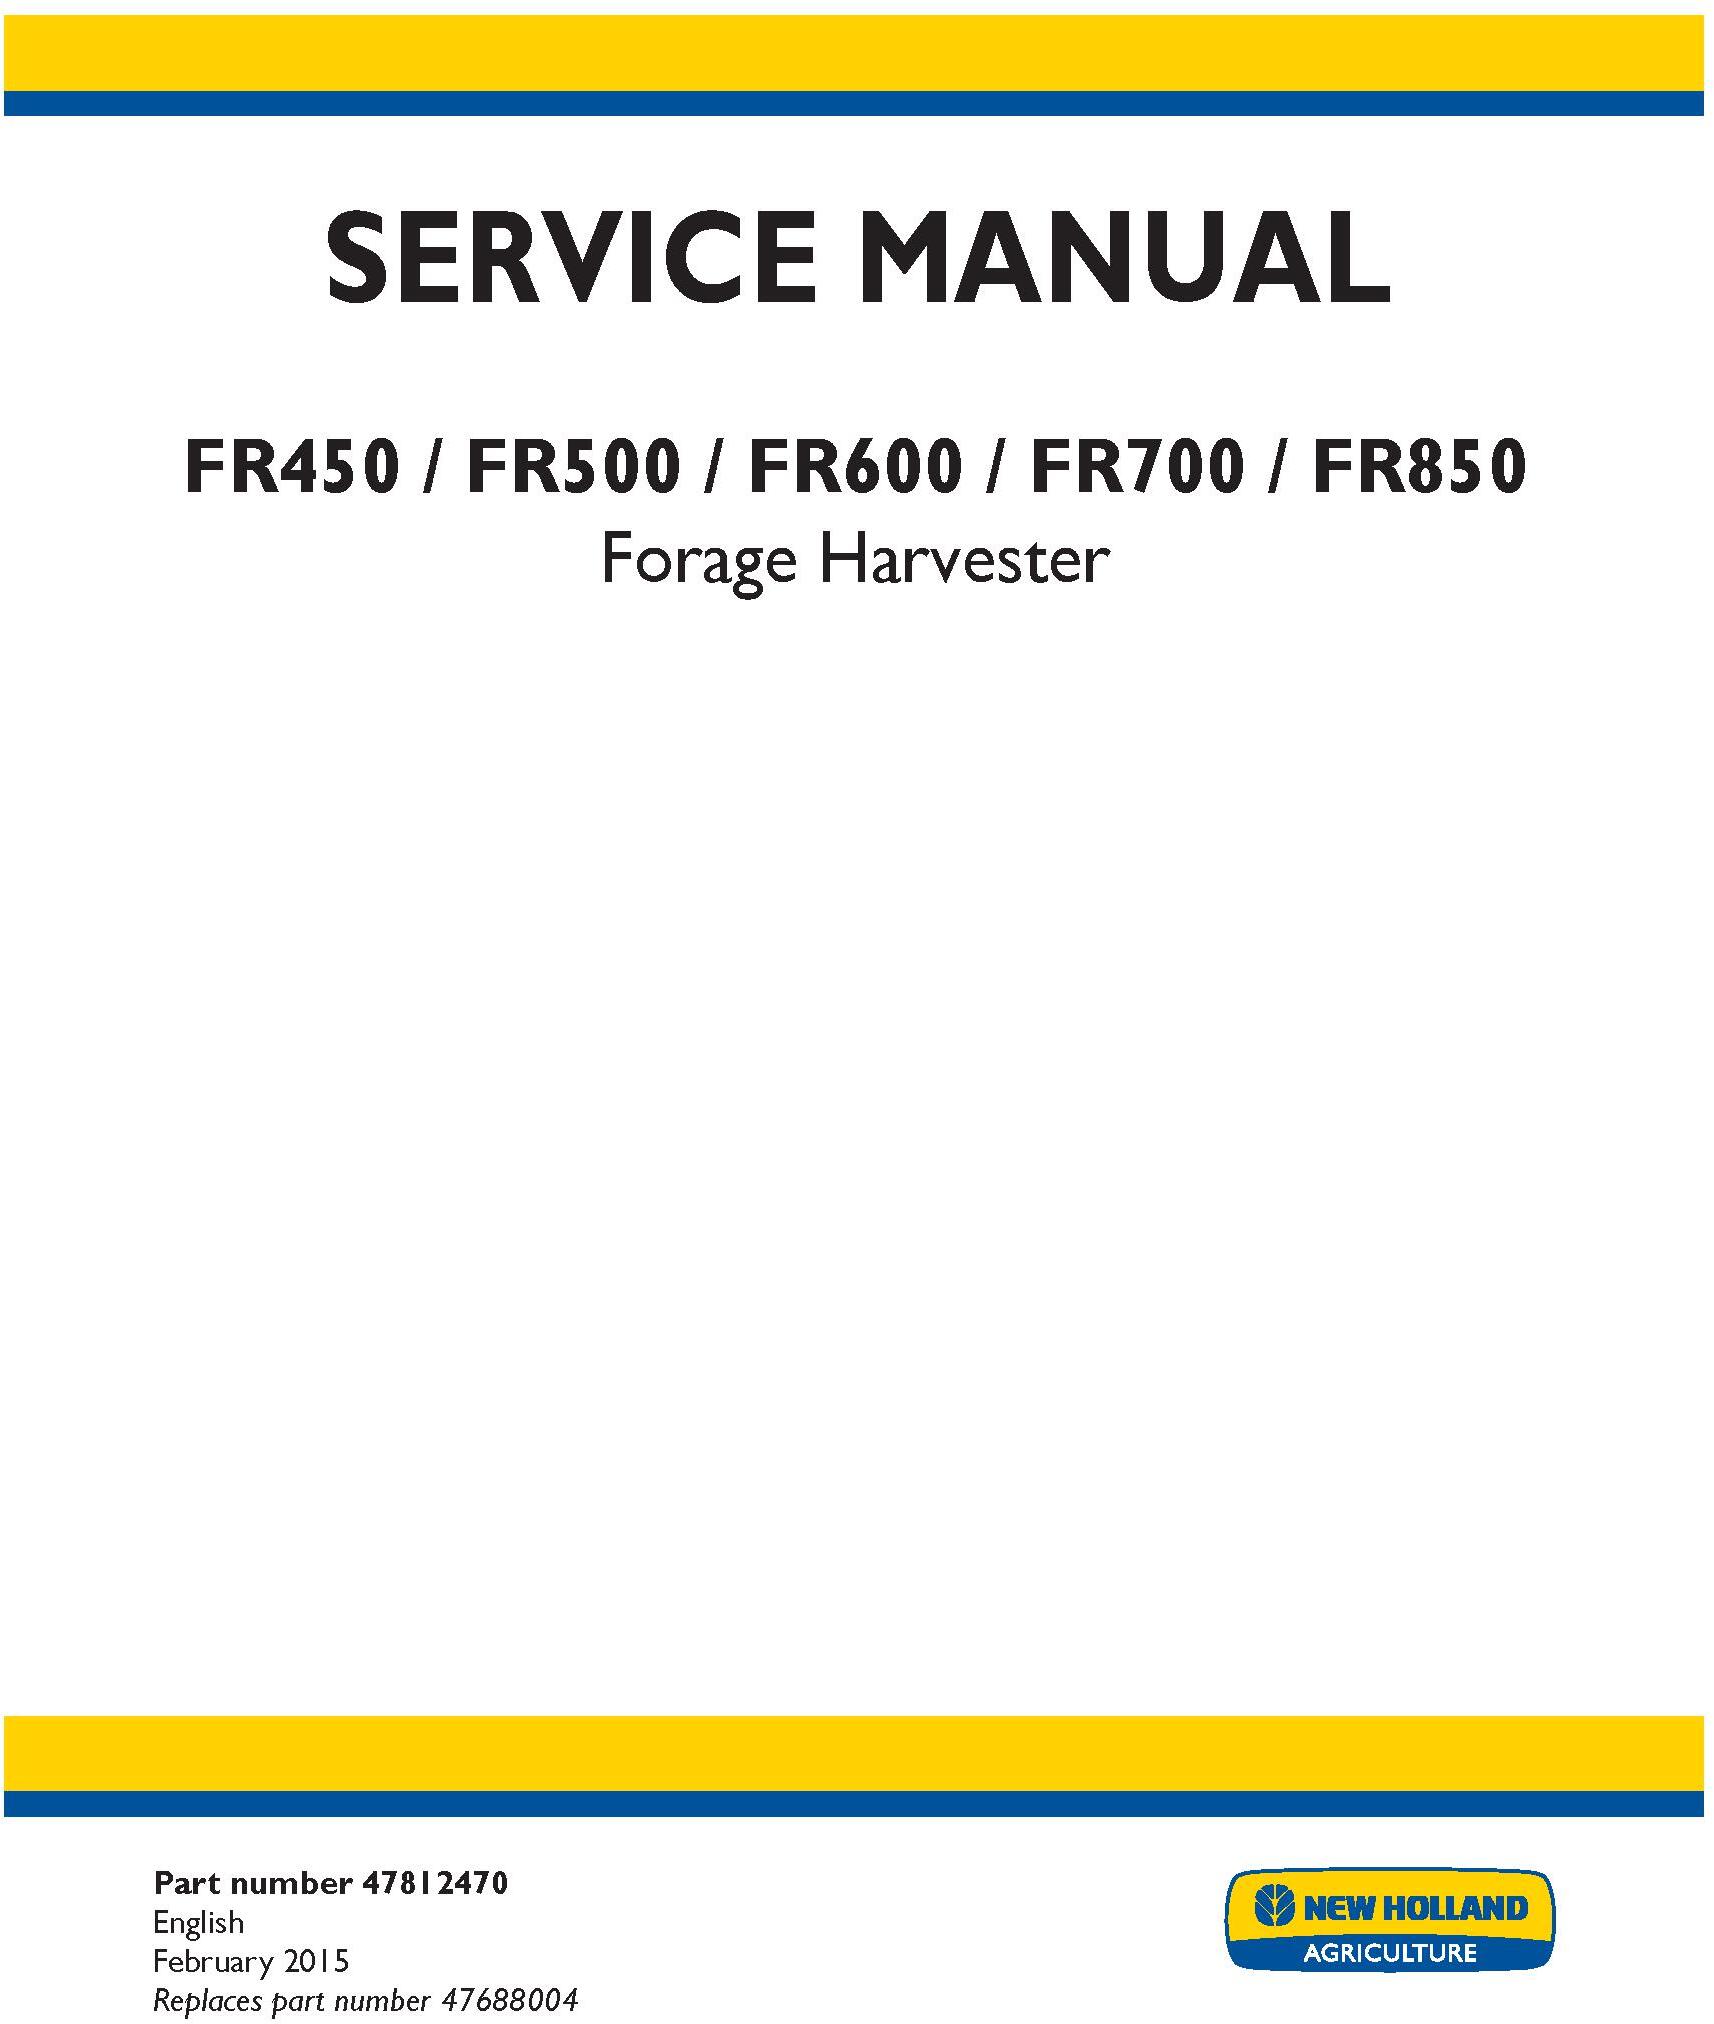 New Holland FR450, FR500, FR600, FR700, FR850 Forage Harvester Complete Service Manual